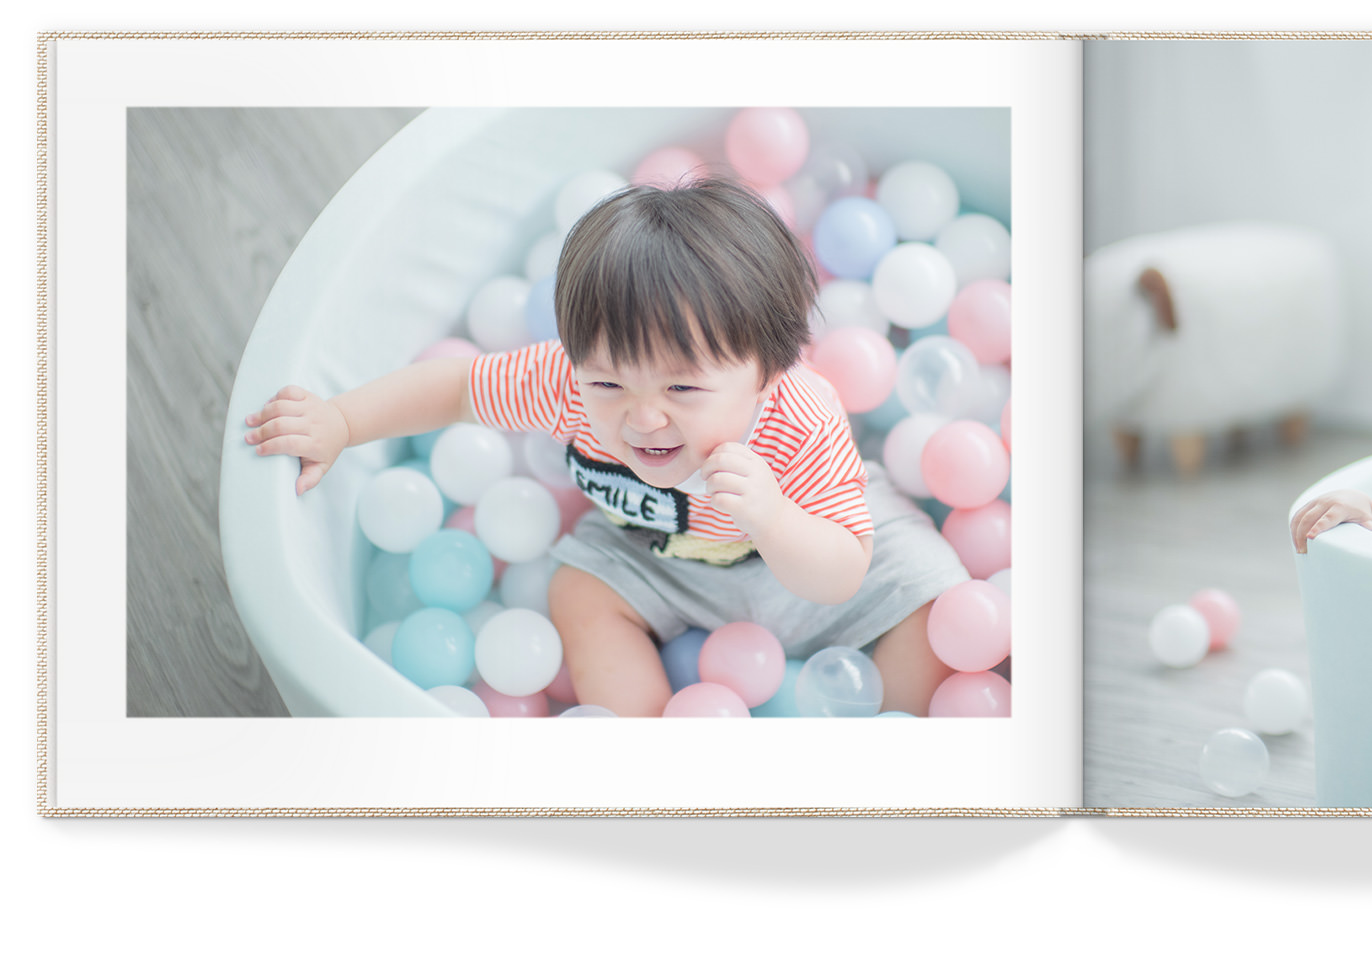 Página de livro aberta com menino risonho em uma piscina de bola colorida.